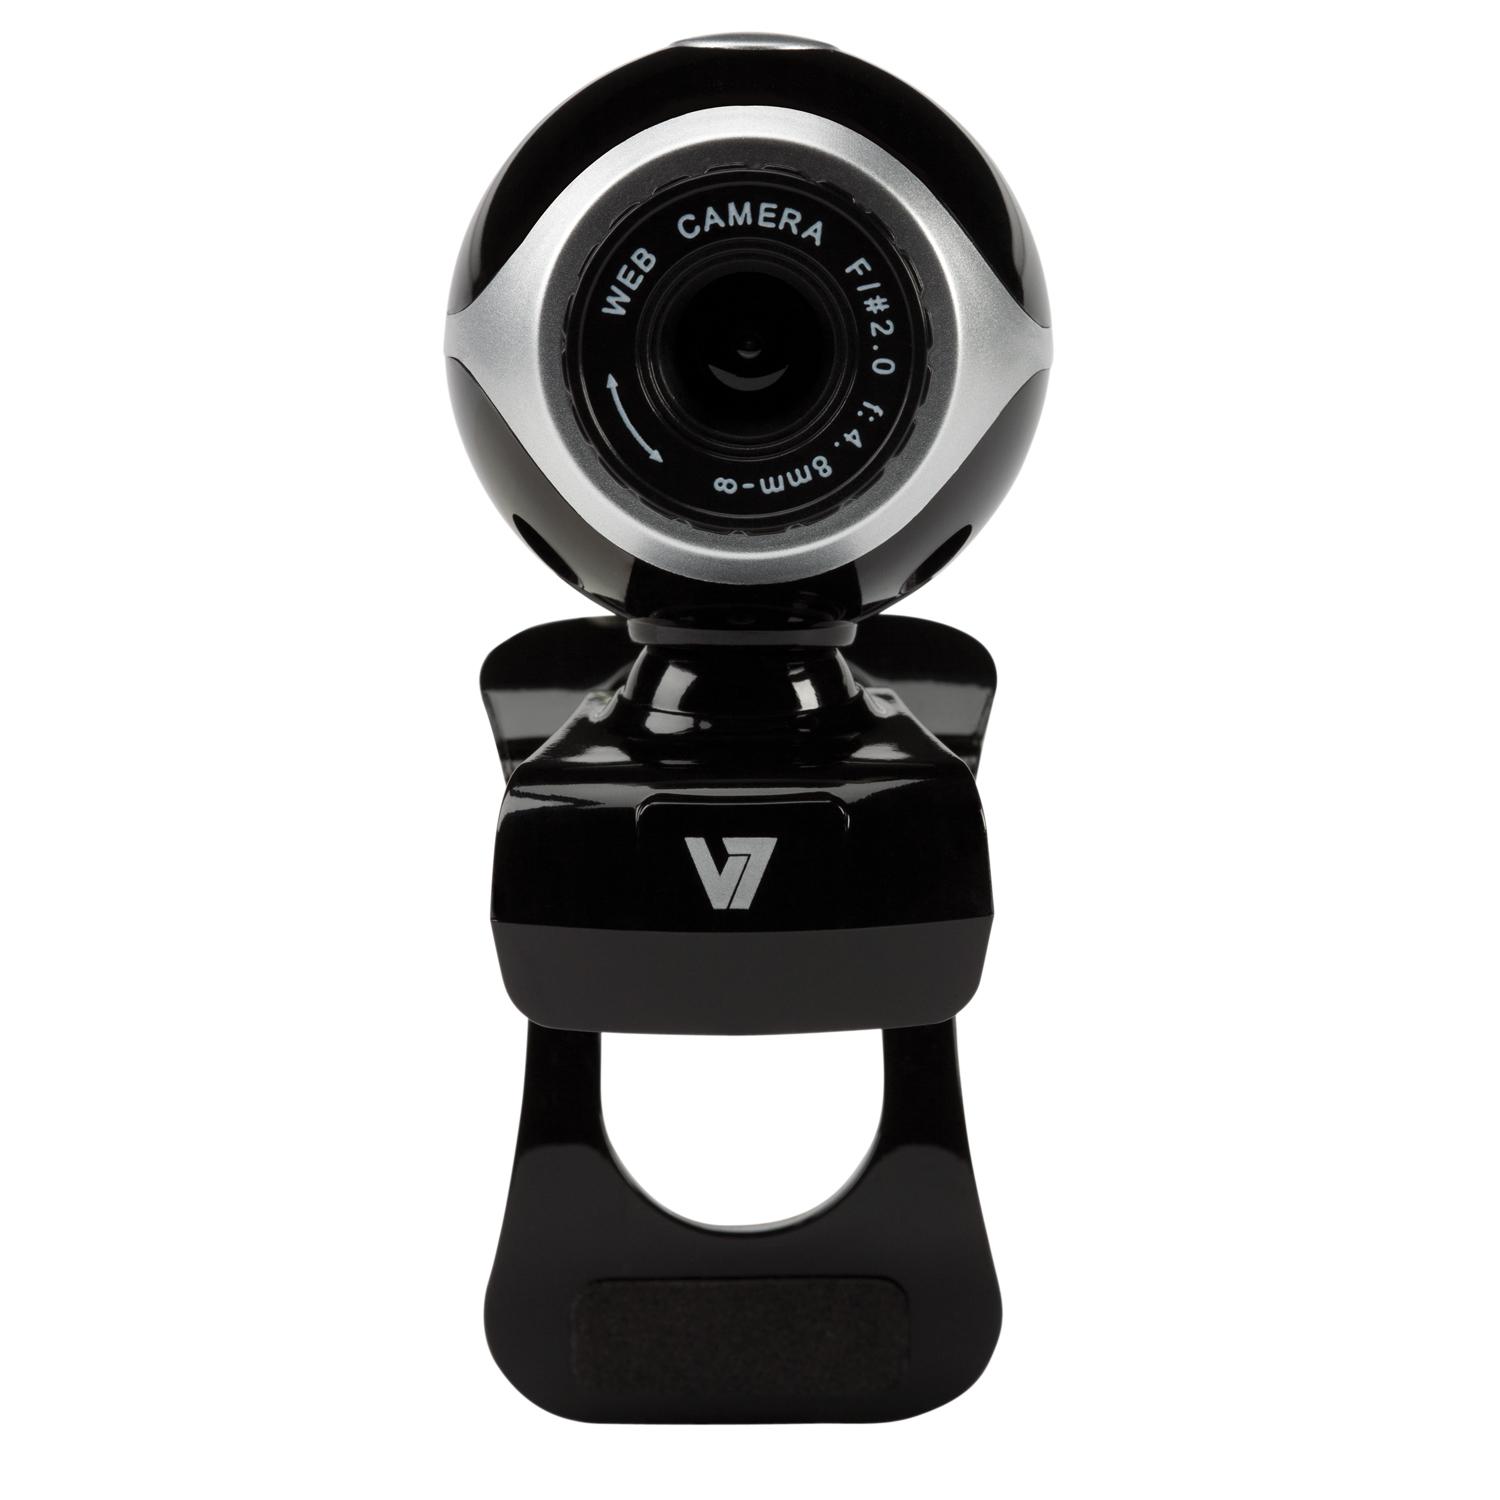 Foto V7 vantage webcam 300, 640 x 480 pixeles, 30 fps, vga, negro, p